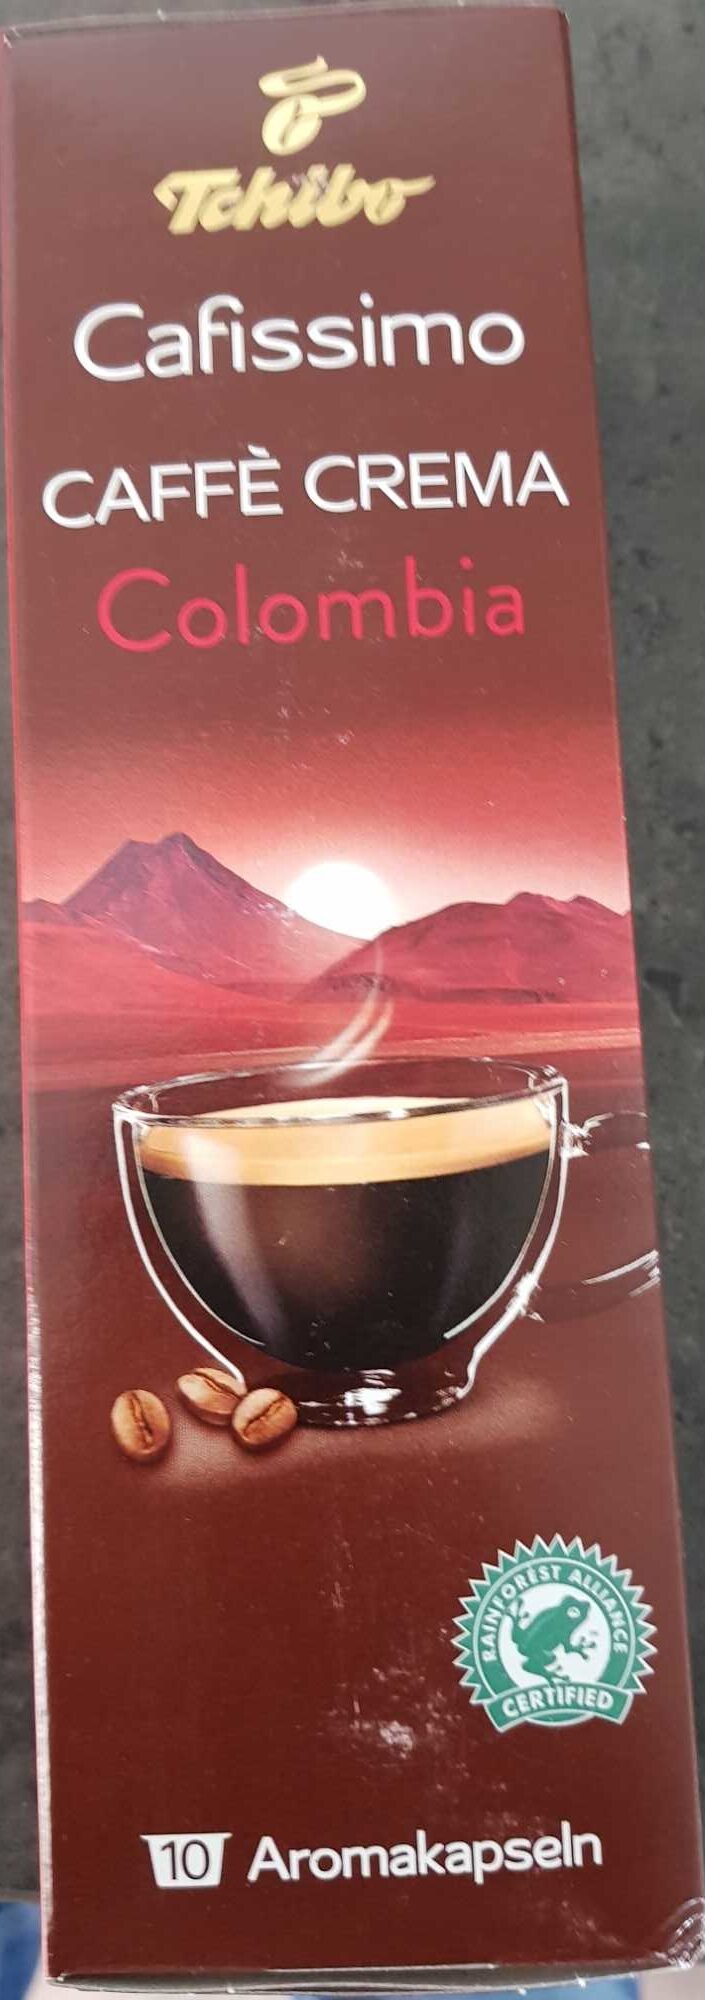 Cafissimo Caffè Crema Colombia - Product - de